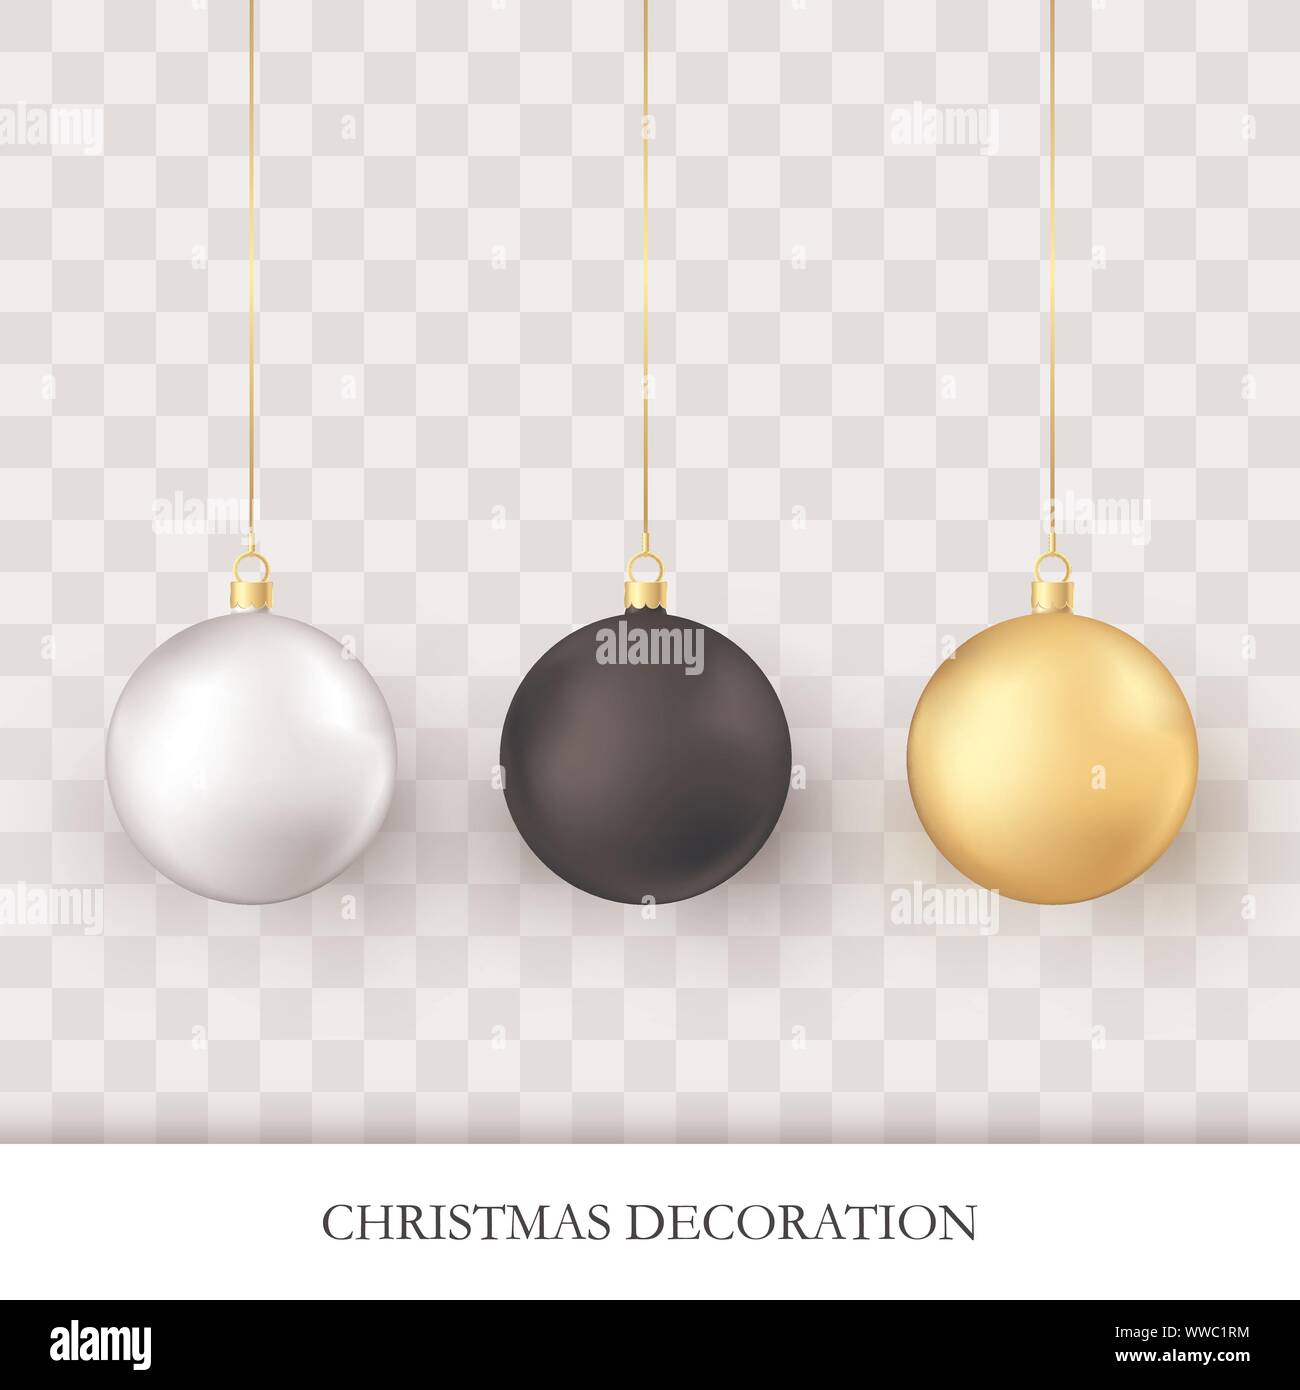 Le decorazioni di Natale. Lucida realistico Natale e Anno Nuovo addobbi per l'albero. Golden bianco e nero vacanza tradizionale realistico palle di Natale. Vect Illustrazione Vettoriale